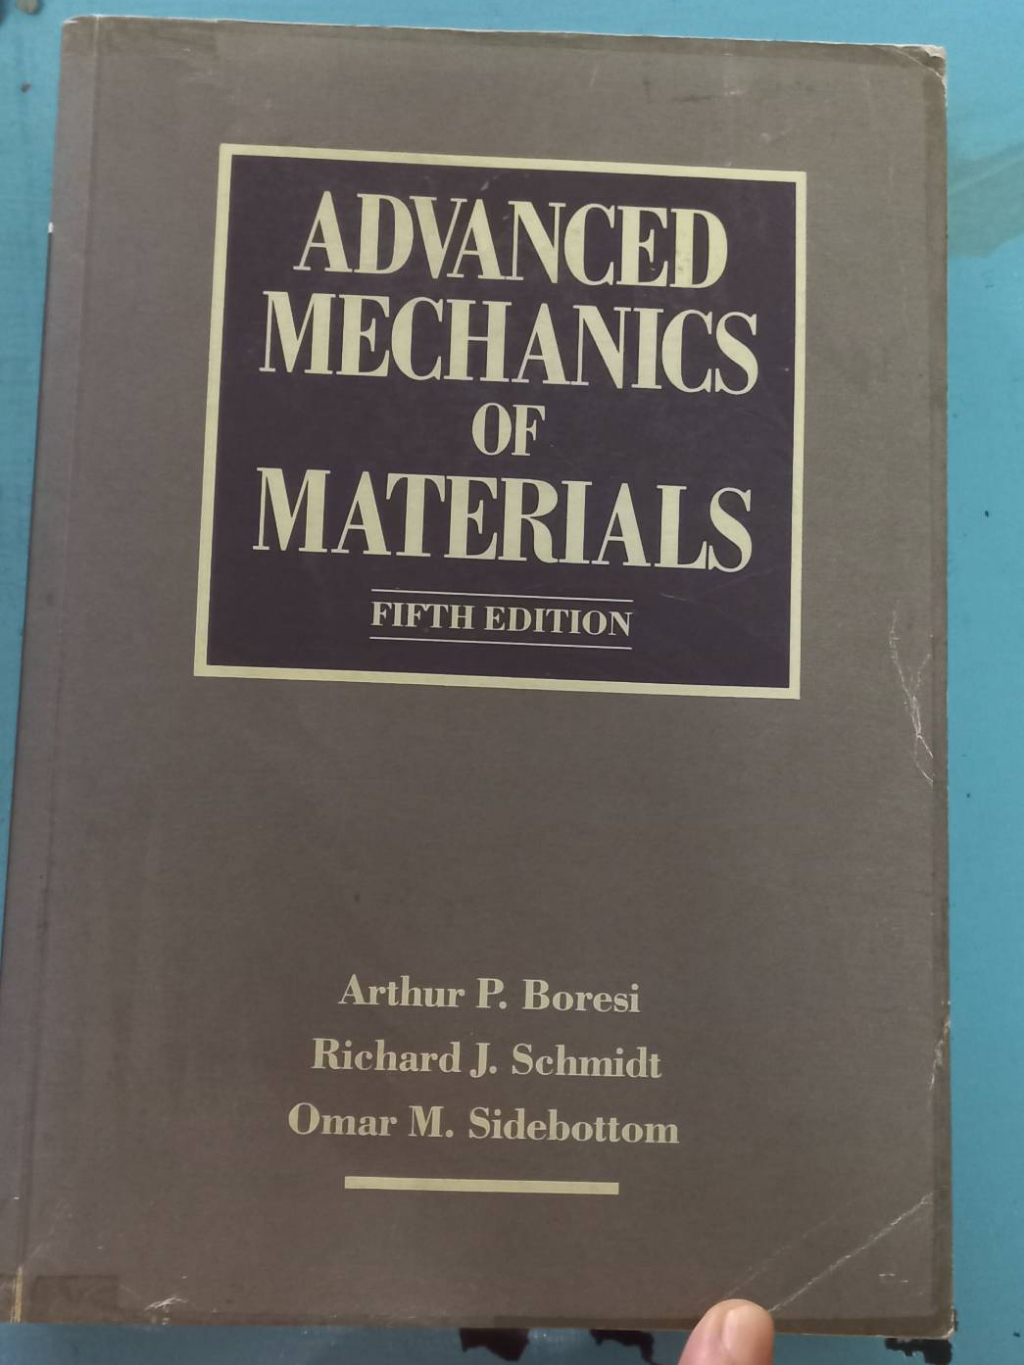 หนังสือมือสองสภาพดี-งสือ-advanced-mechanics-of-materials-เขียนโดย-arthur-p-boresi-หนังสือมือสองสภาพพอใช้